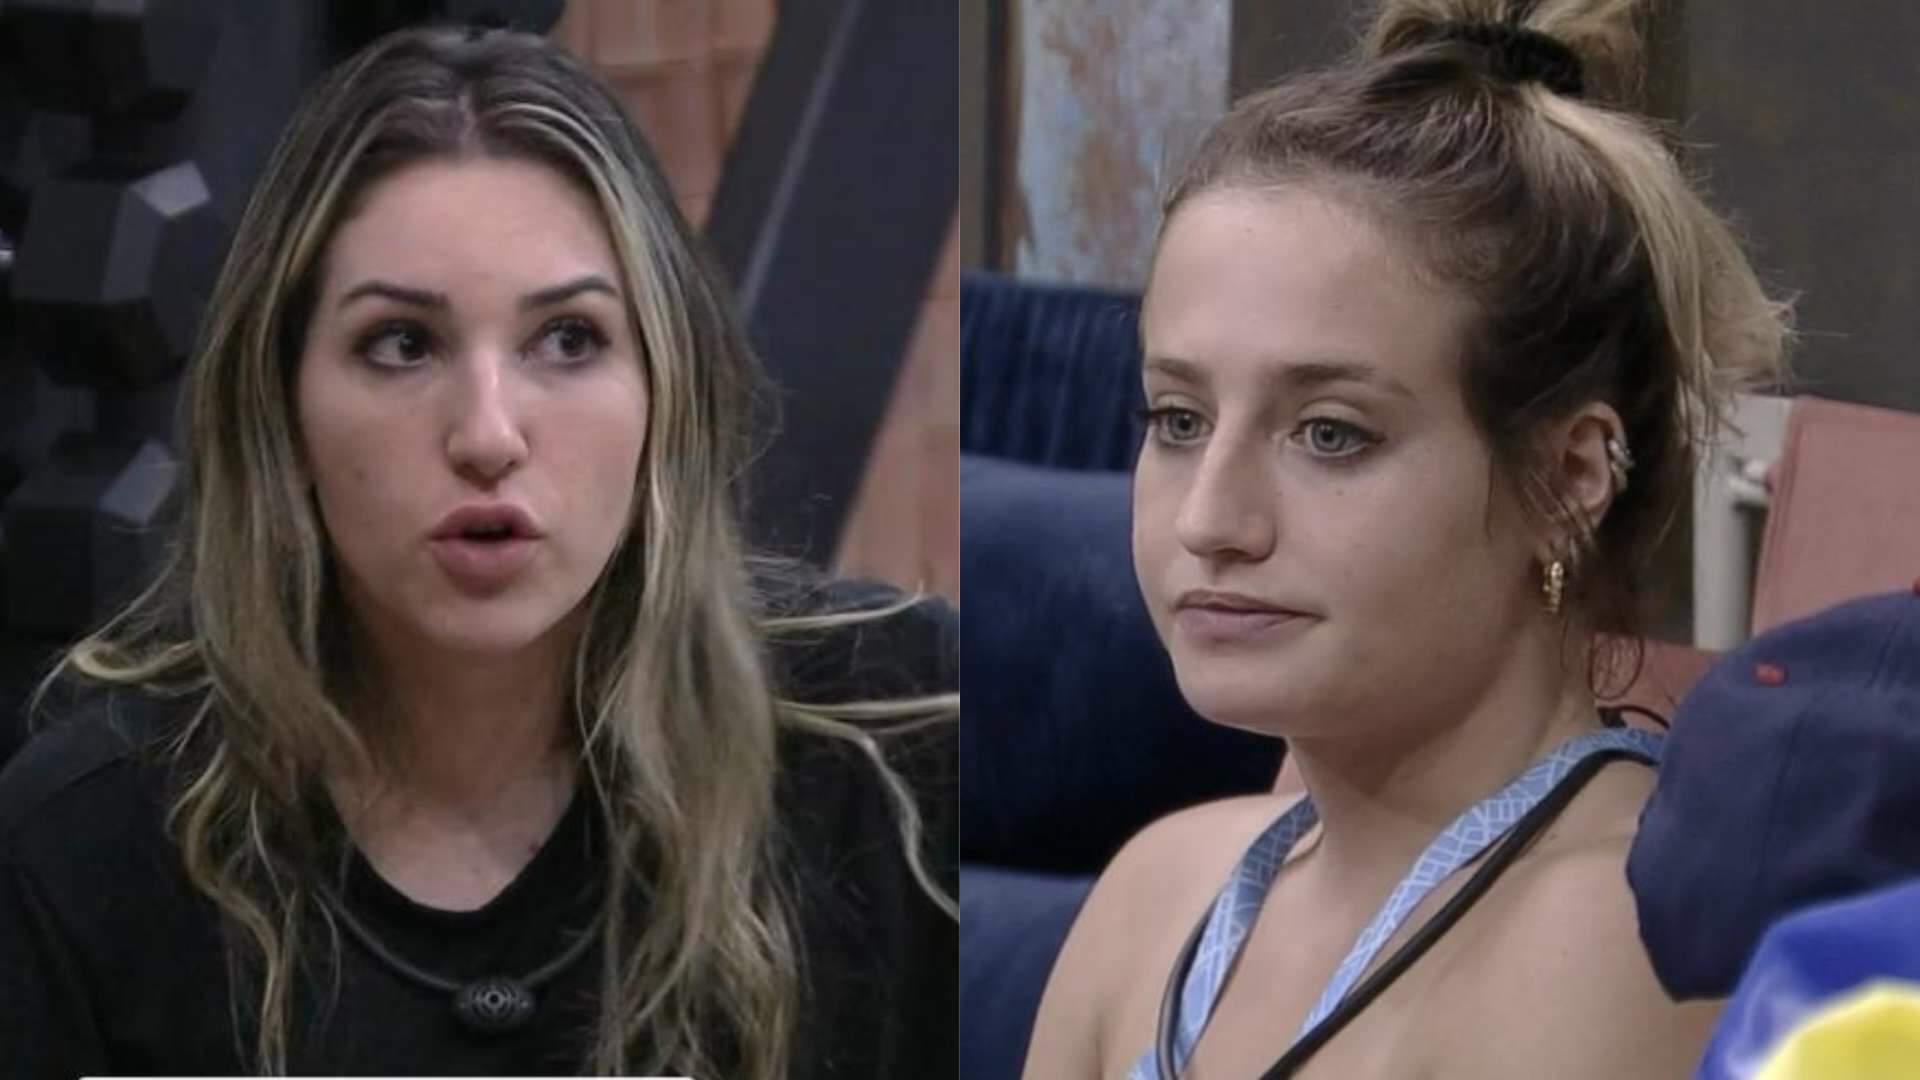 BBB 23: Amanda se revolta e detona Bruna após treta com ex-aliado: “Você é muito grossa” - Metropolitana FM